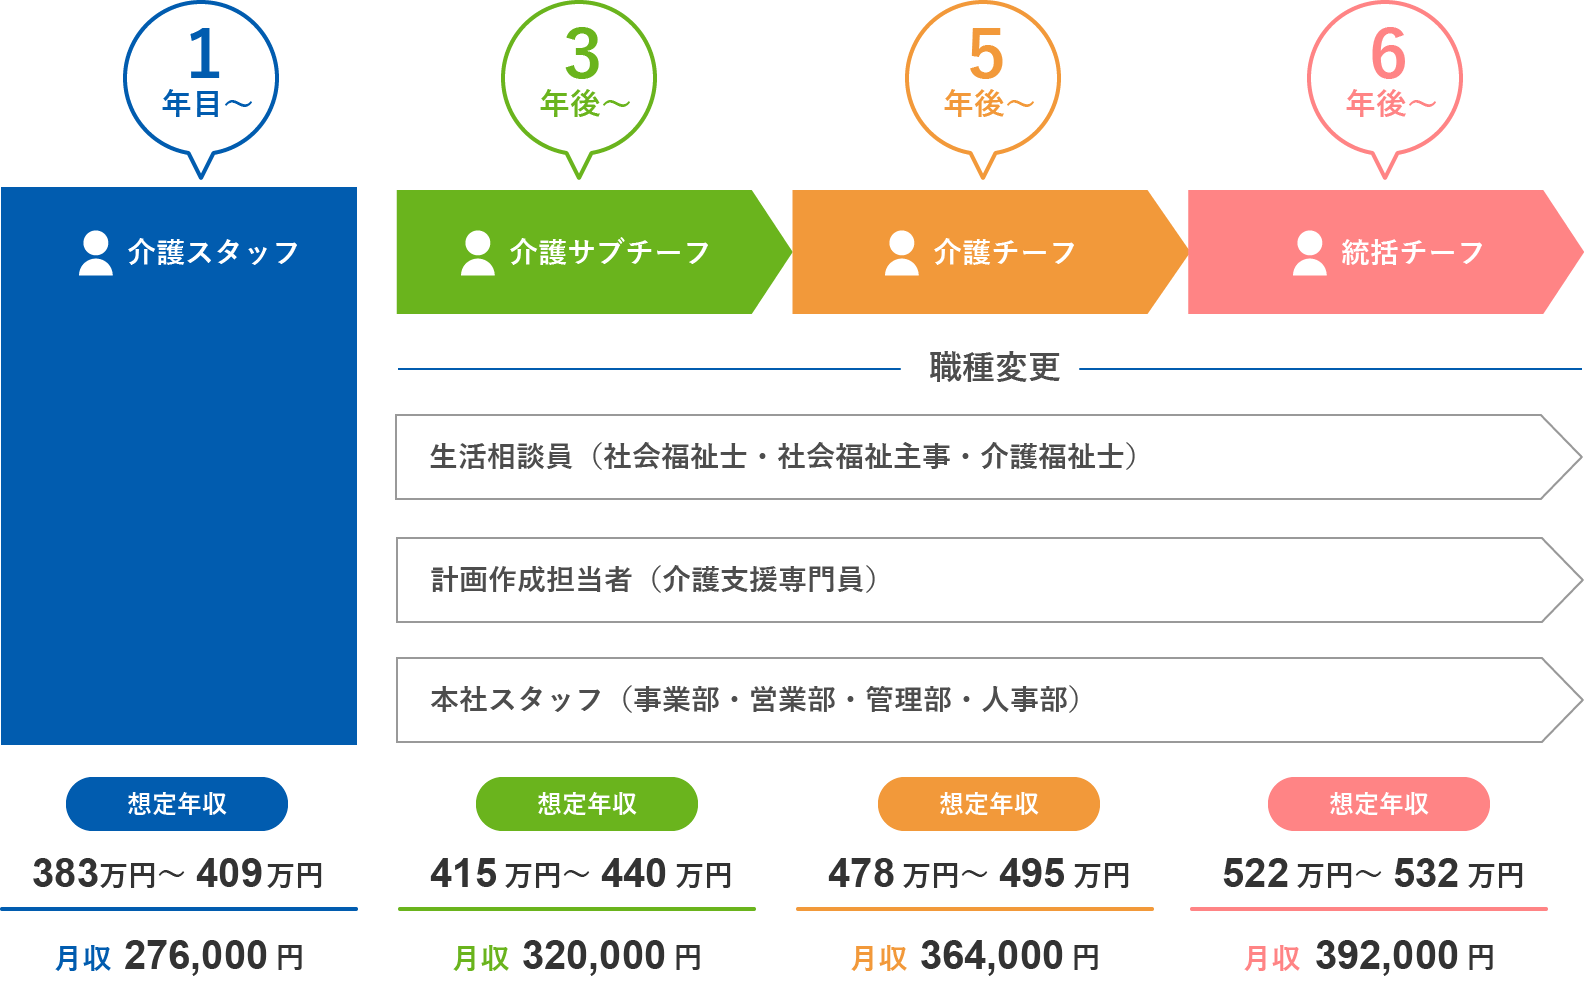 関東圏のキャリアアップと昇給のイメージ